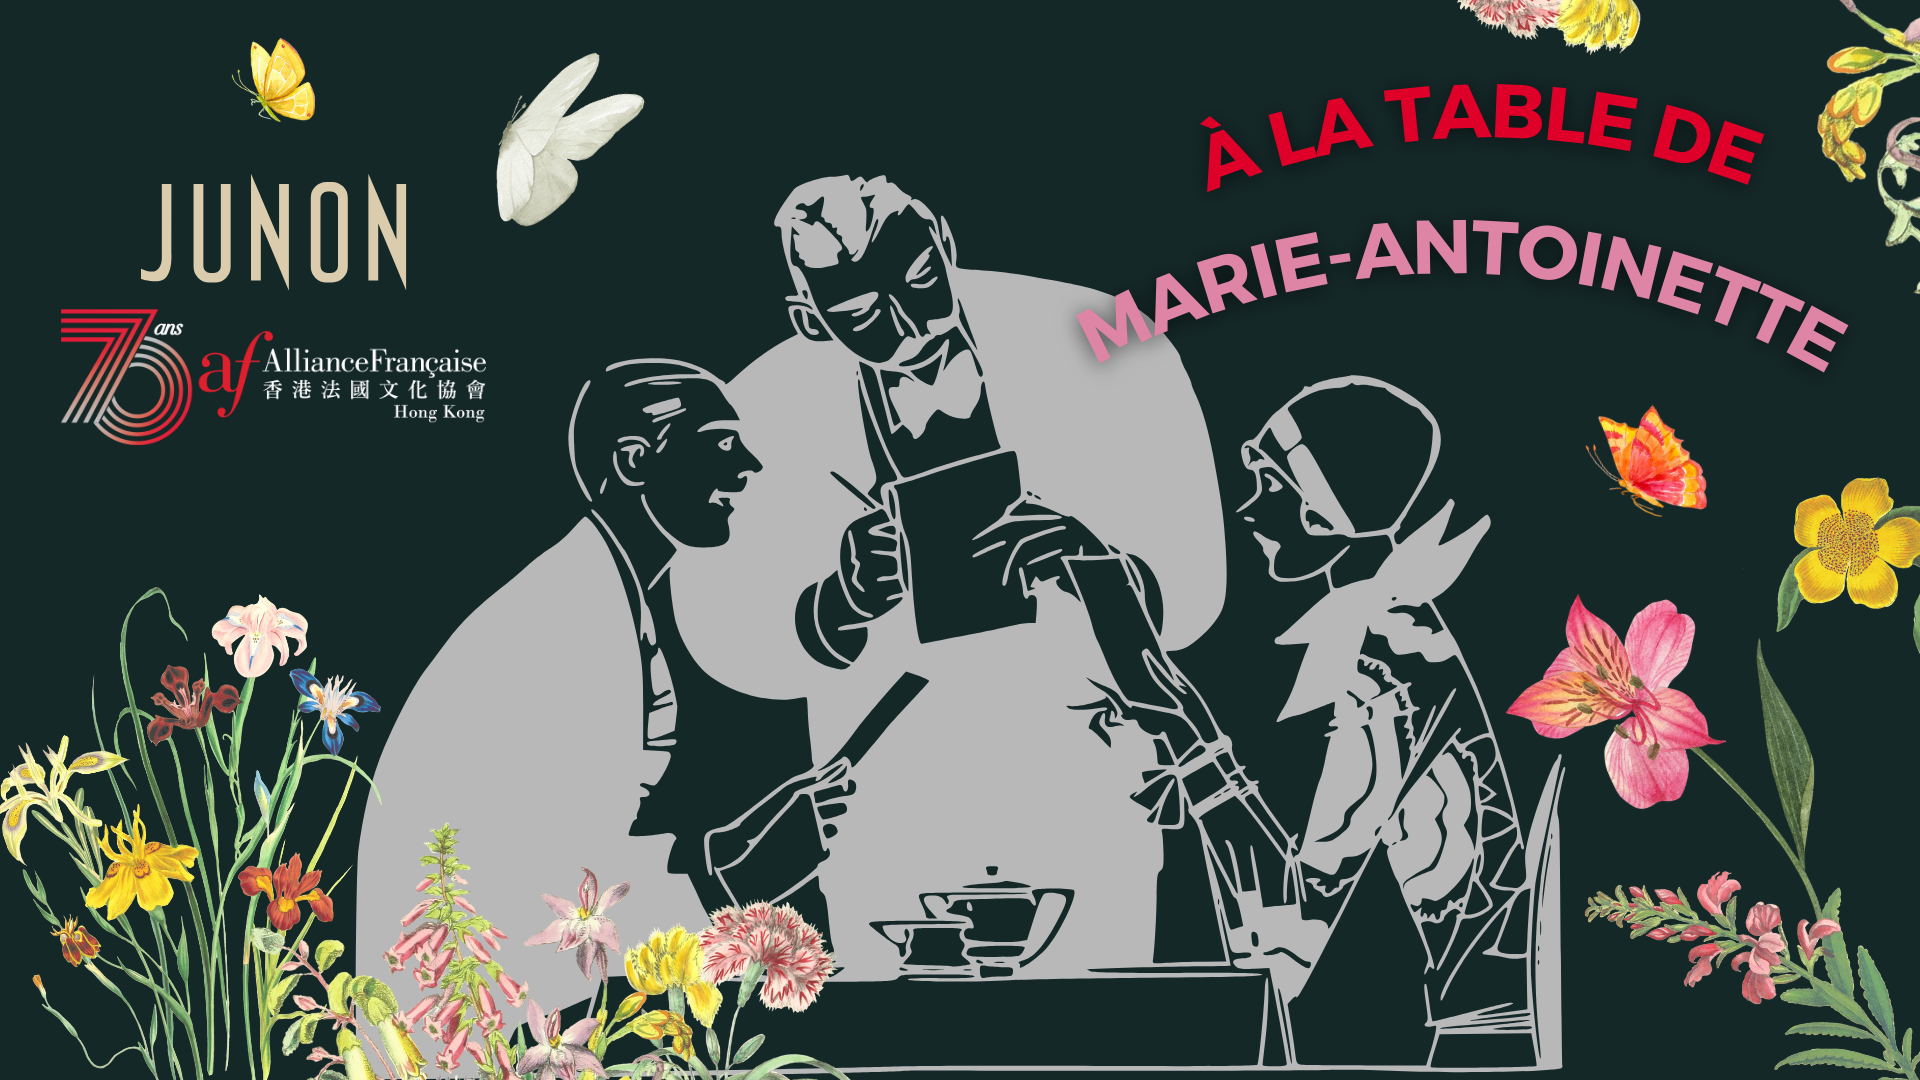 Dining Etiquette | À la table de Marie-Antoinette